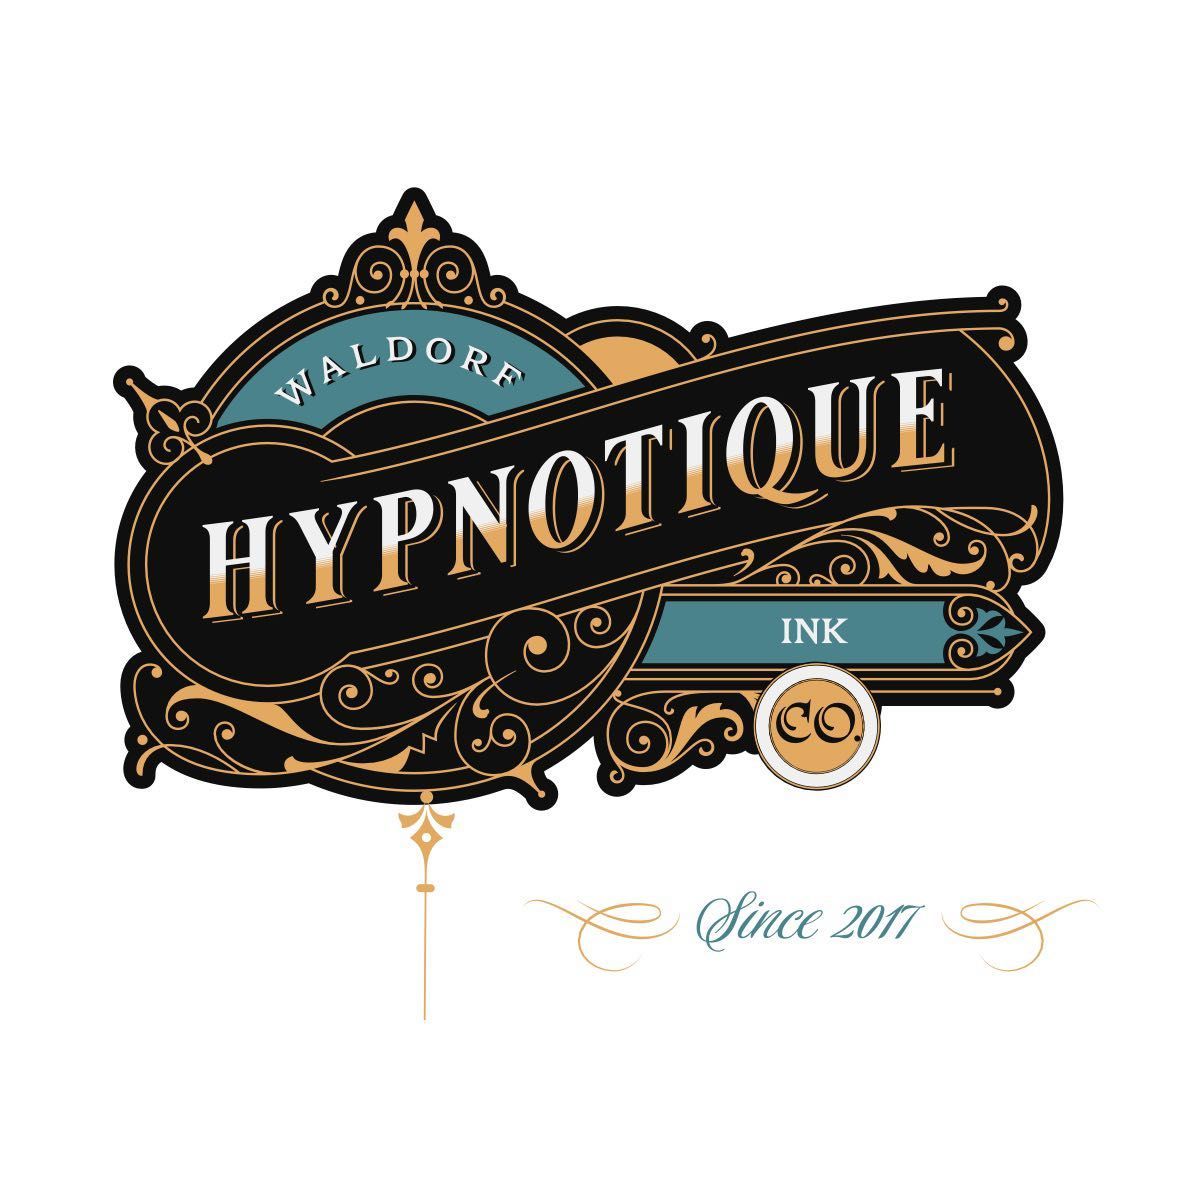 Hypnotique Ink, 222 Smallwood Village Ctr, Waldorf, 20602